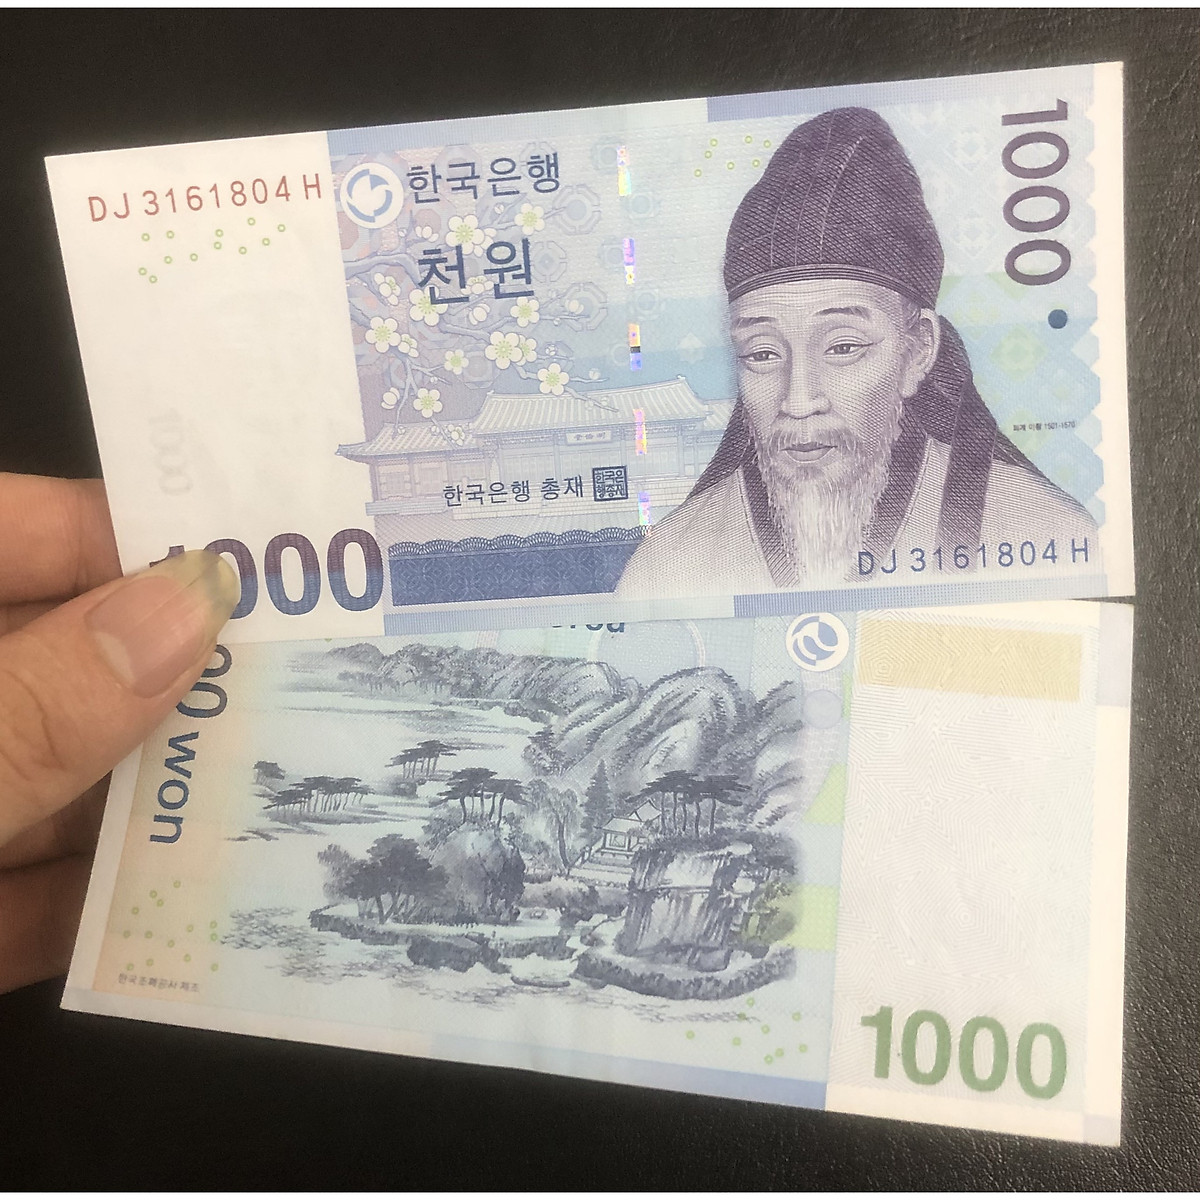 Tờ tiền mệnh giá 1000 won